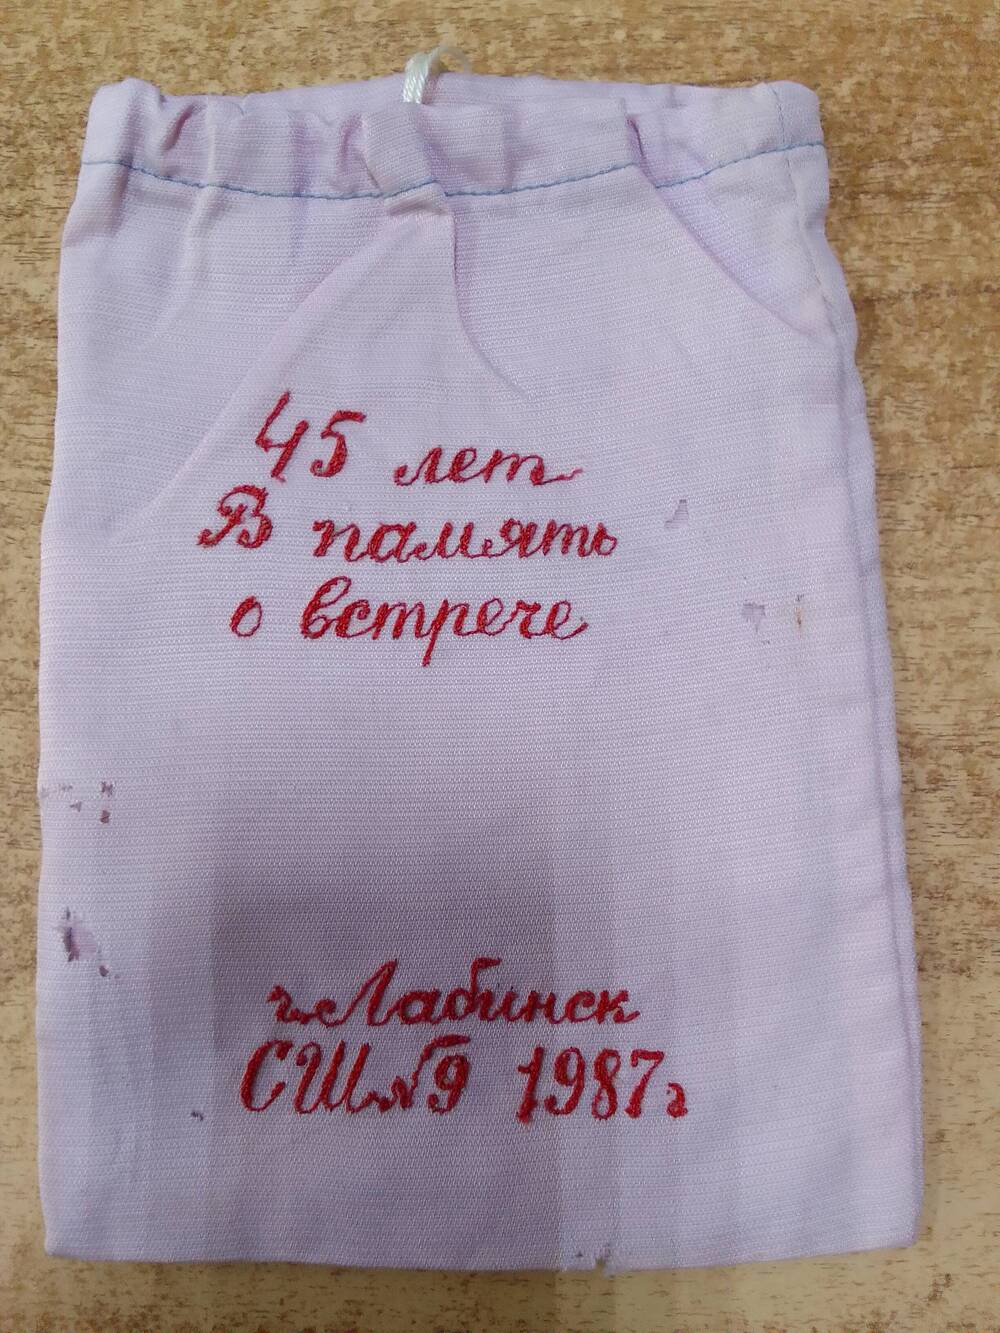 Кисет для махорки с памятной вышивкой, сделанный учениками СШ№9 города Лабинска